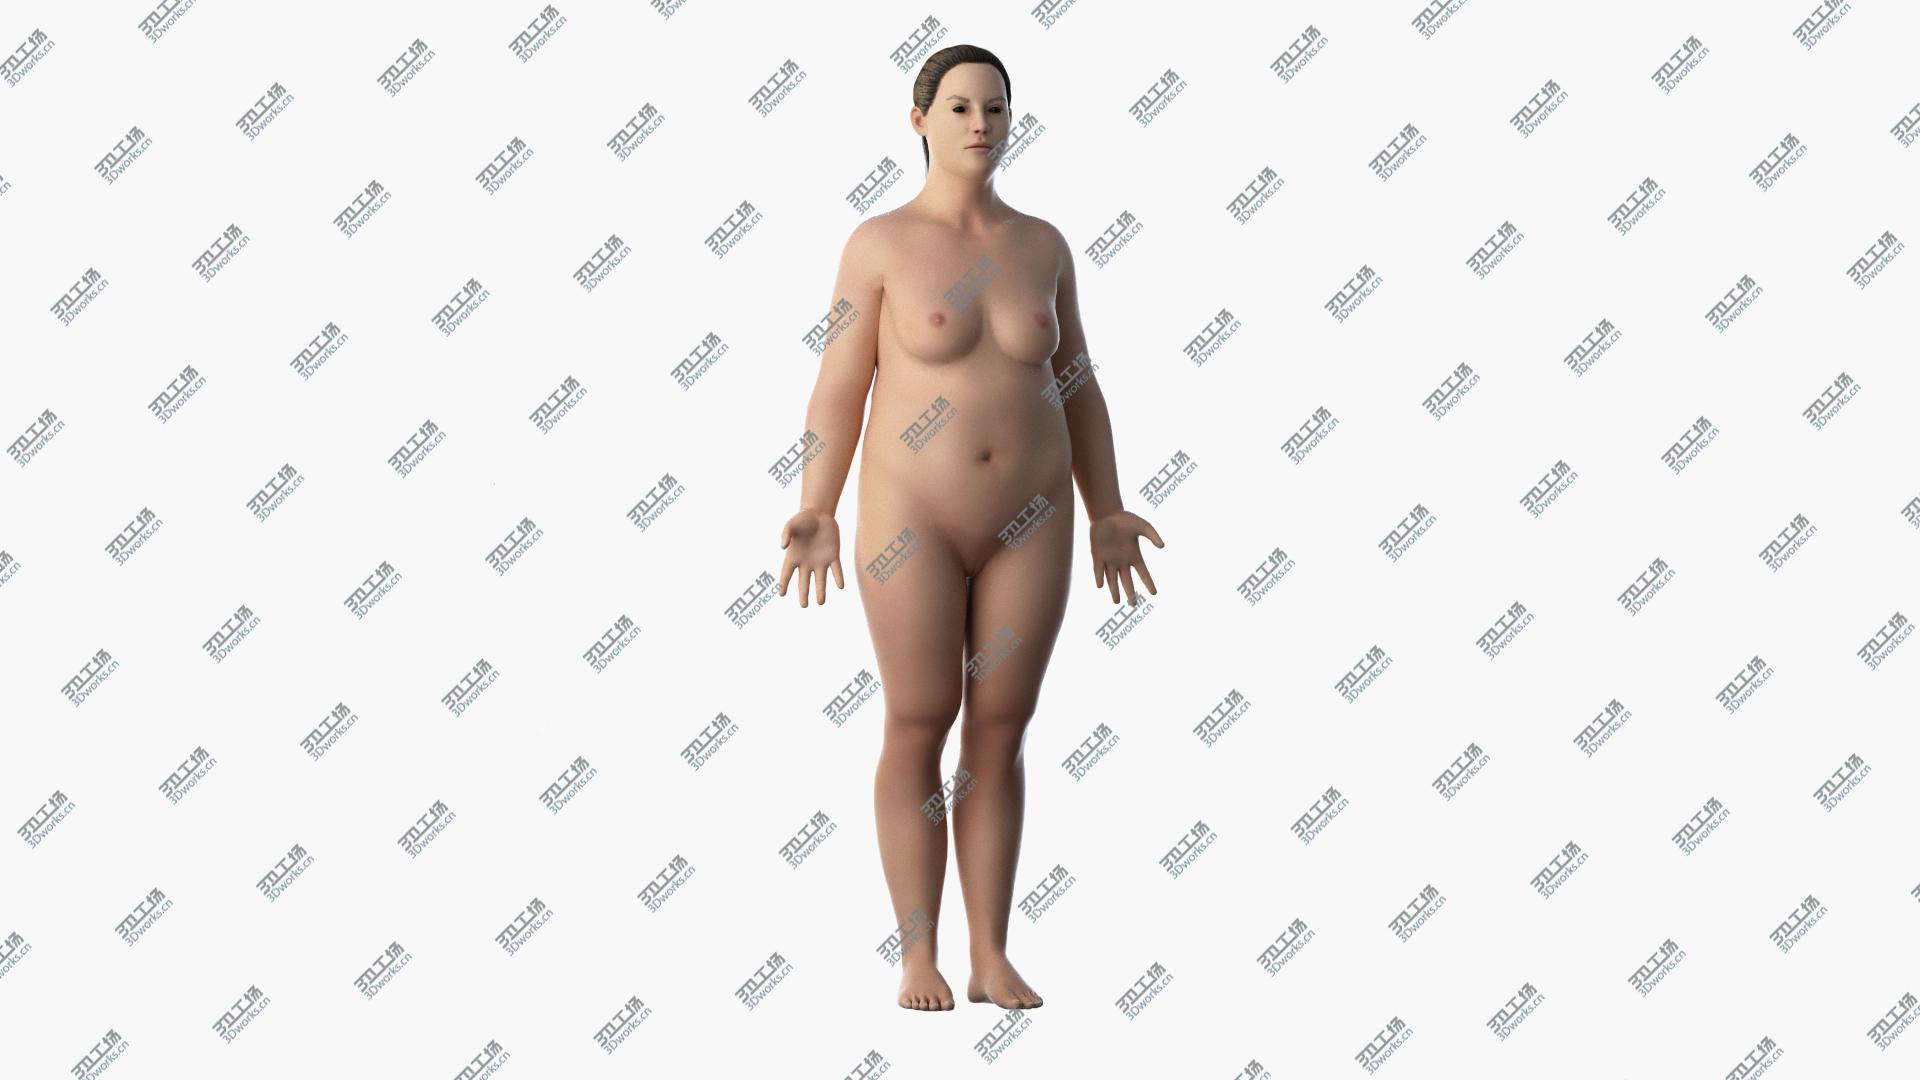 images/goods_img/20210313/3D Obese Female Skin, Skeleton And Vascular System Rigged model/2.jpg